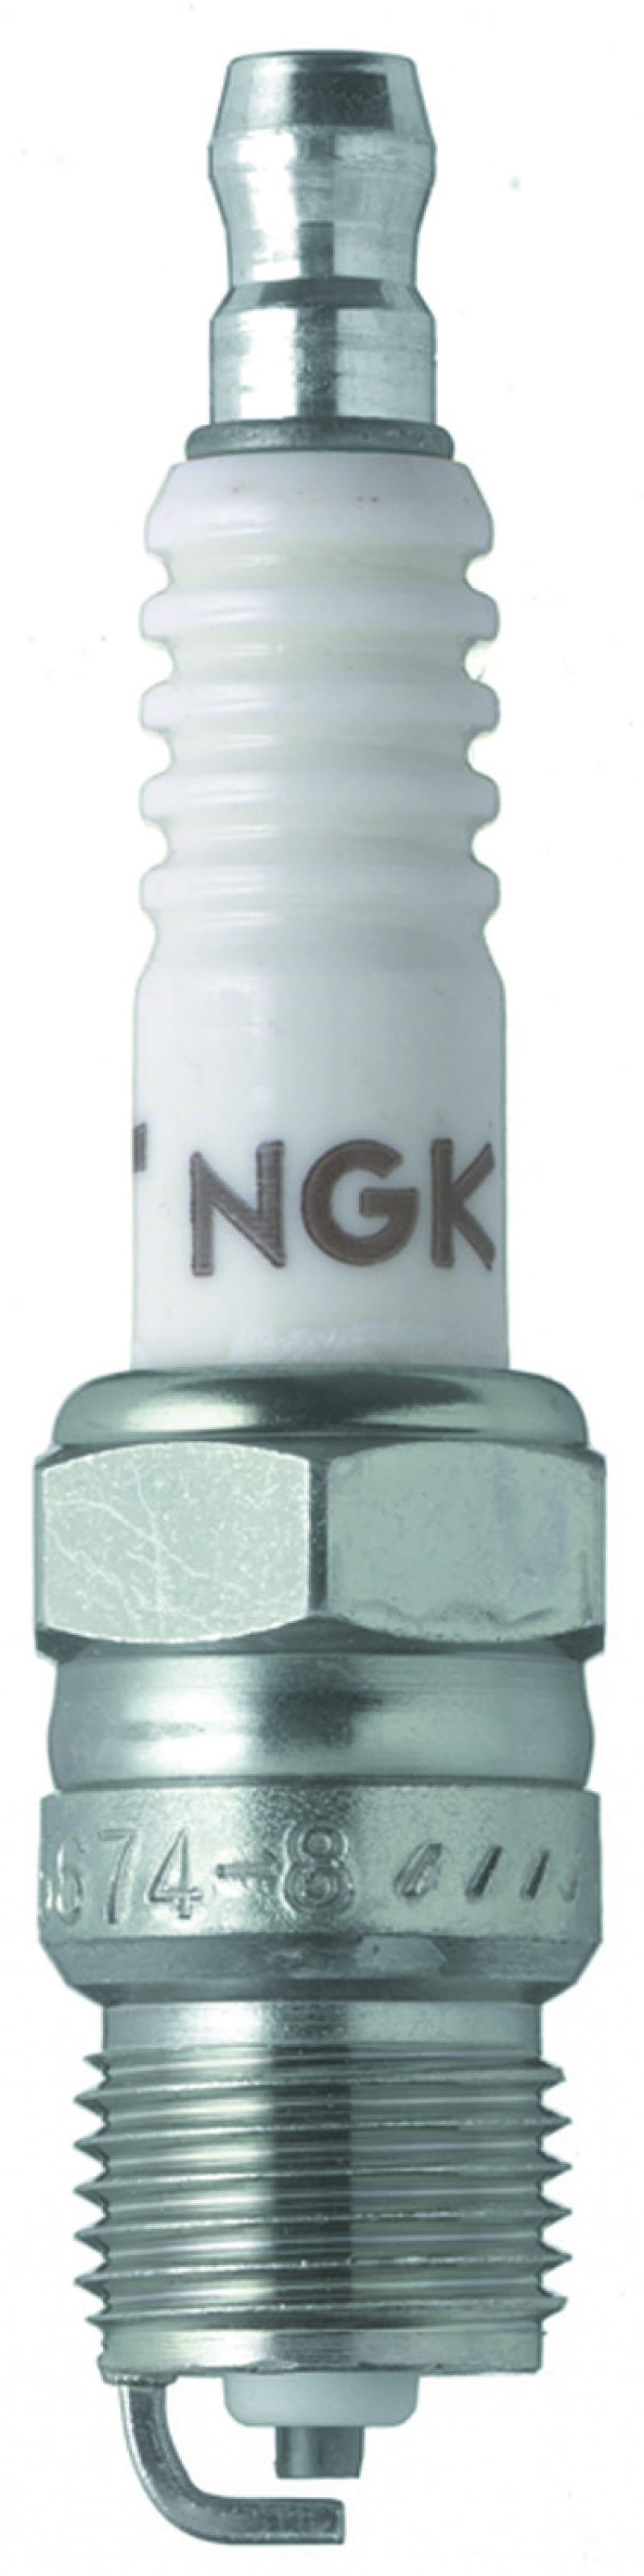 NGK Racing Spark Plug Box of 4 (R5674-7) - 5034